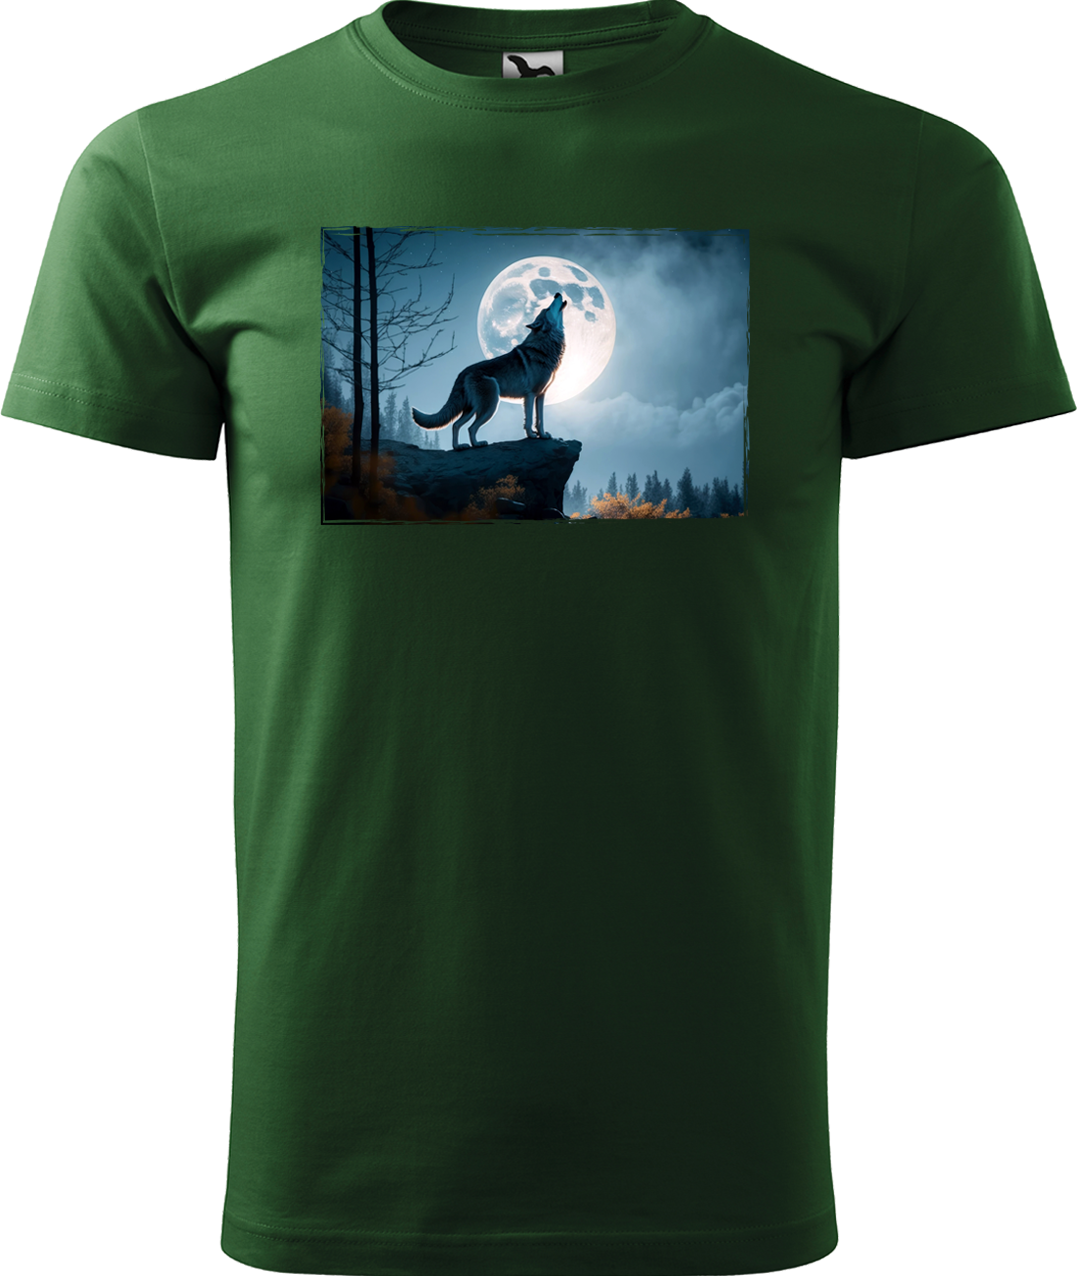 Pánské tričko s vlkem - Vyjící vlk Velikost: XL, Barva: Lahvově zelená (06)